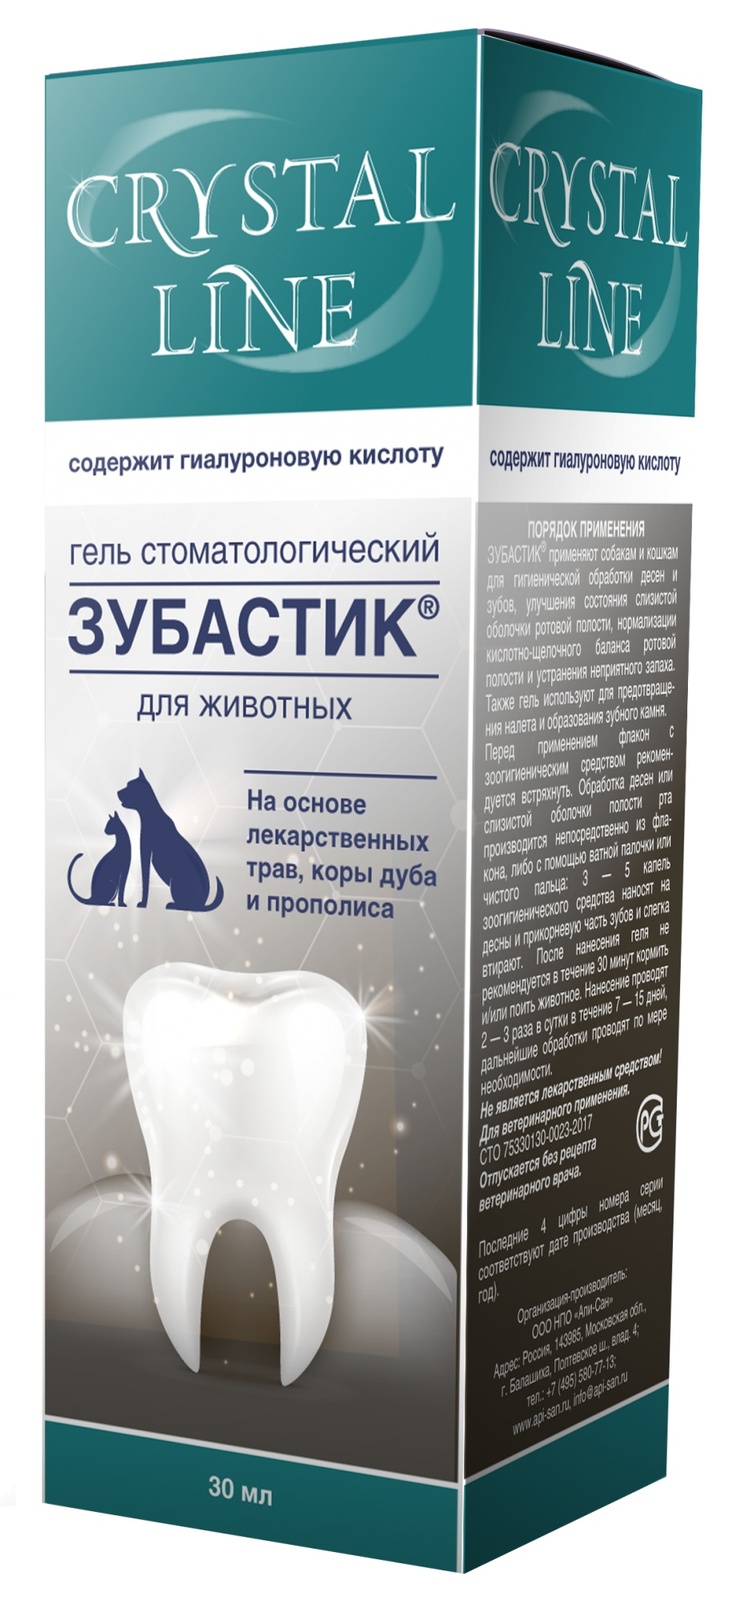 Apicenna Apicenna зубастик гель для чистки зубов Crystal line (30 г) стоматологический гель для животных apicenna зубастик crystal line 30мл